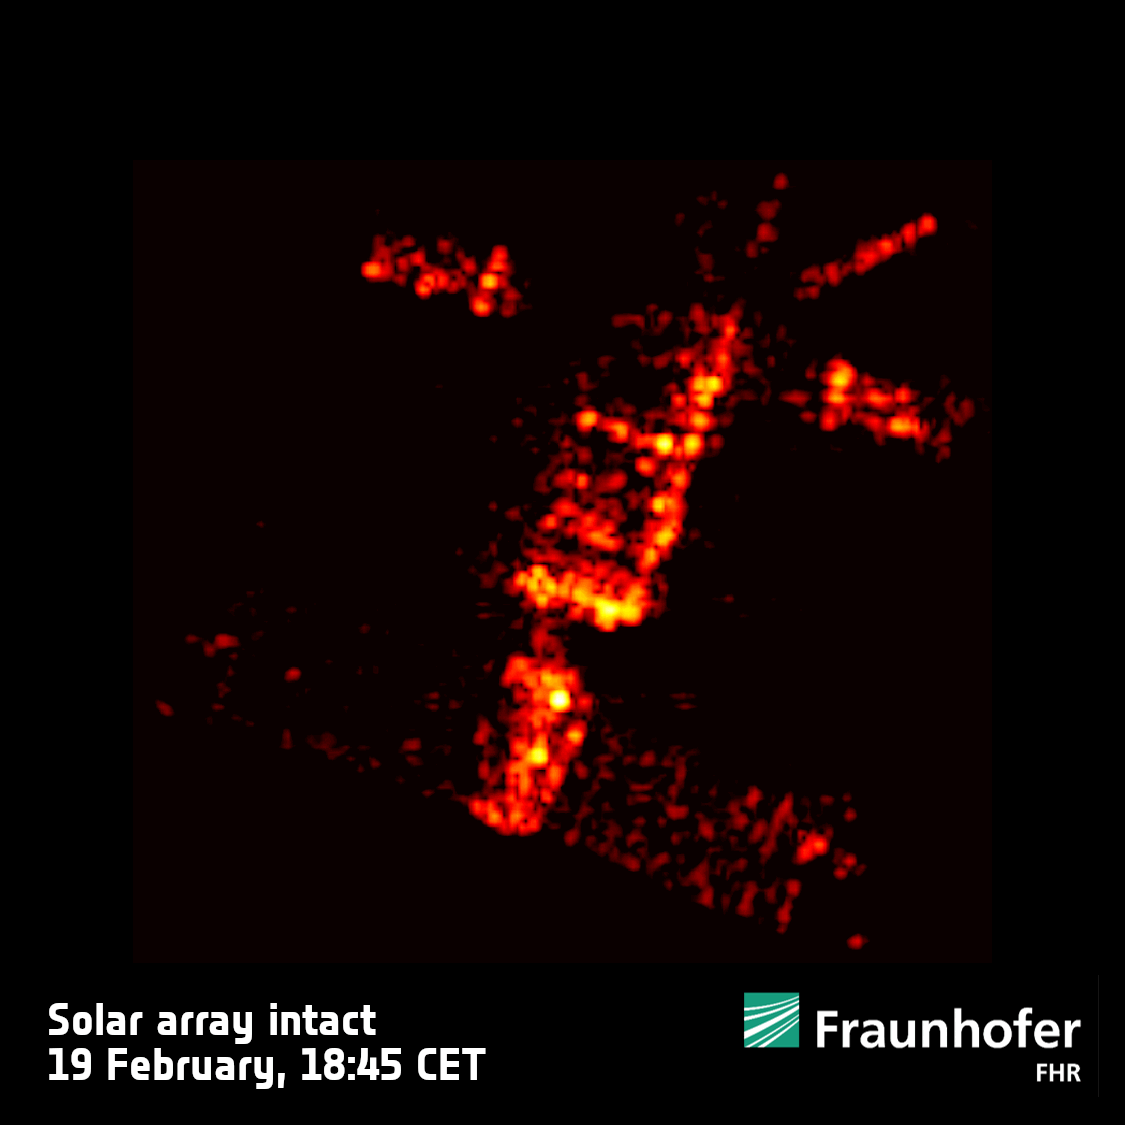 Des images radar montrent le satellite européen condamné ERS-2 qui se déforme et brûle lors de ses dernières orbites autour de la Terre.